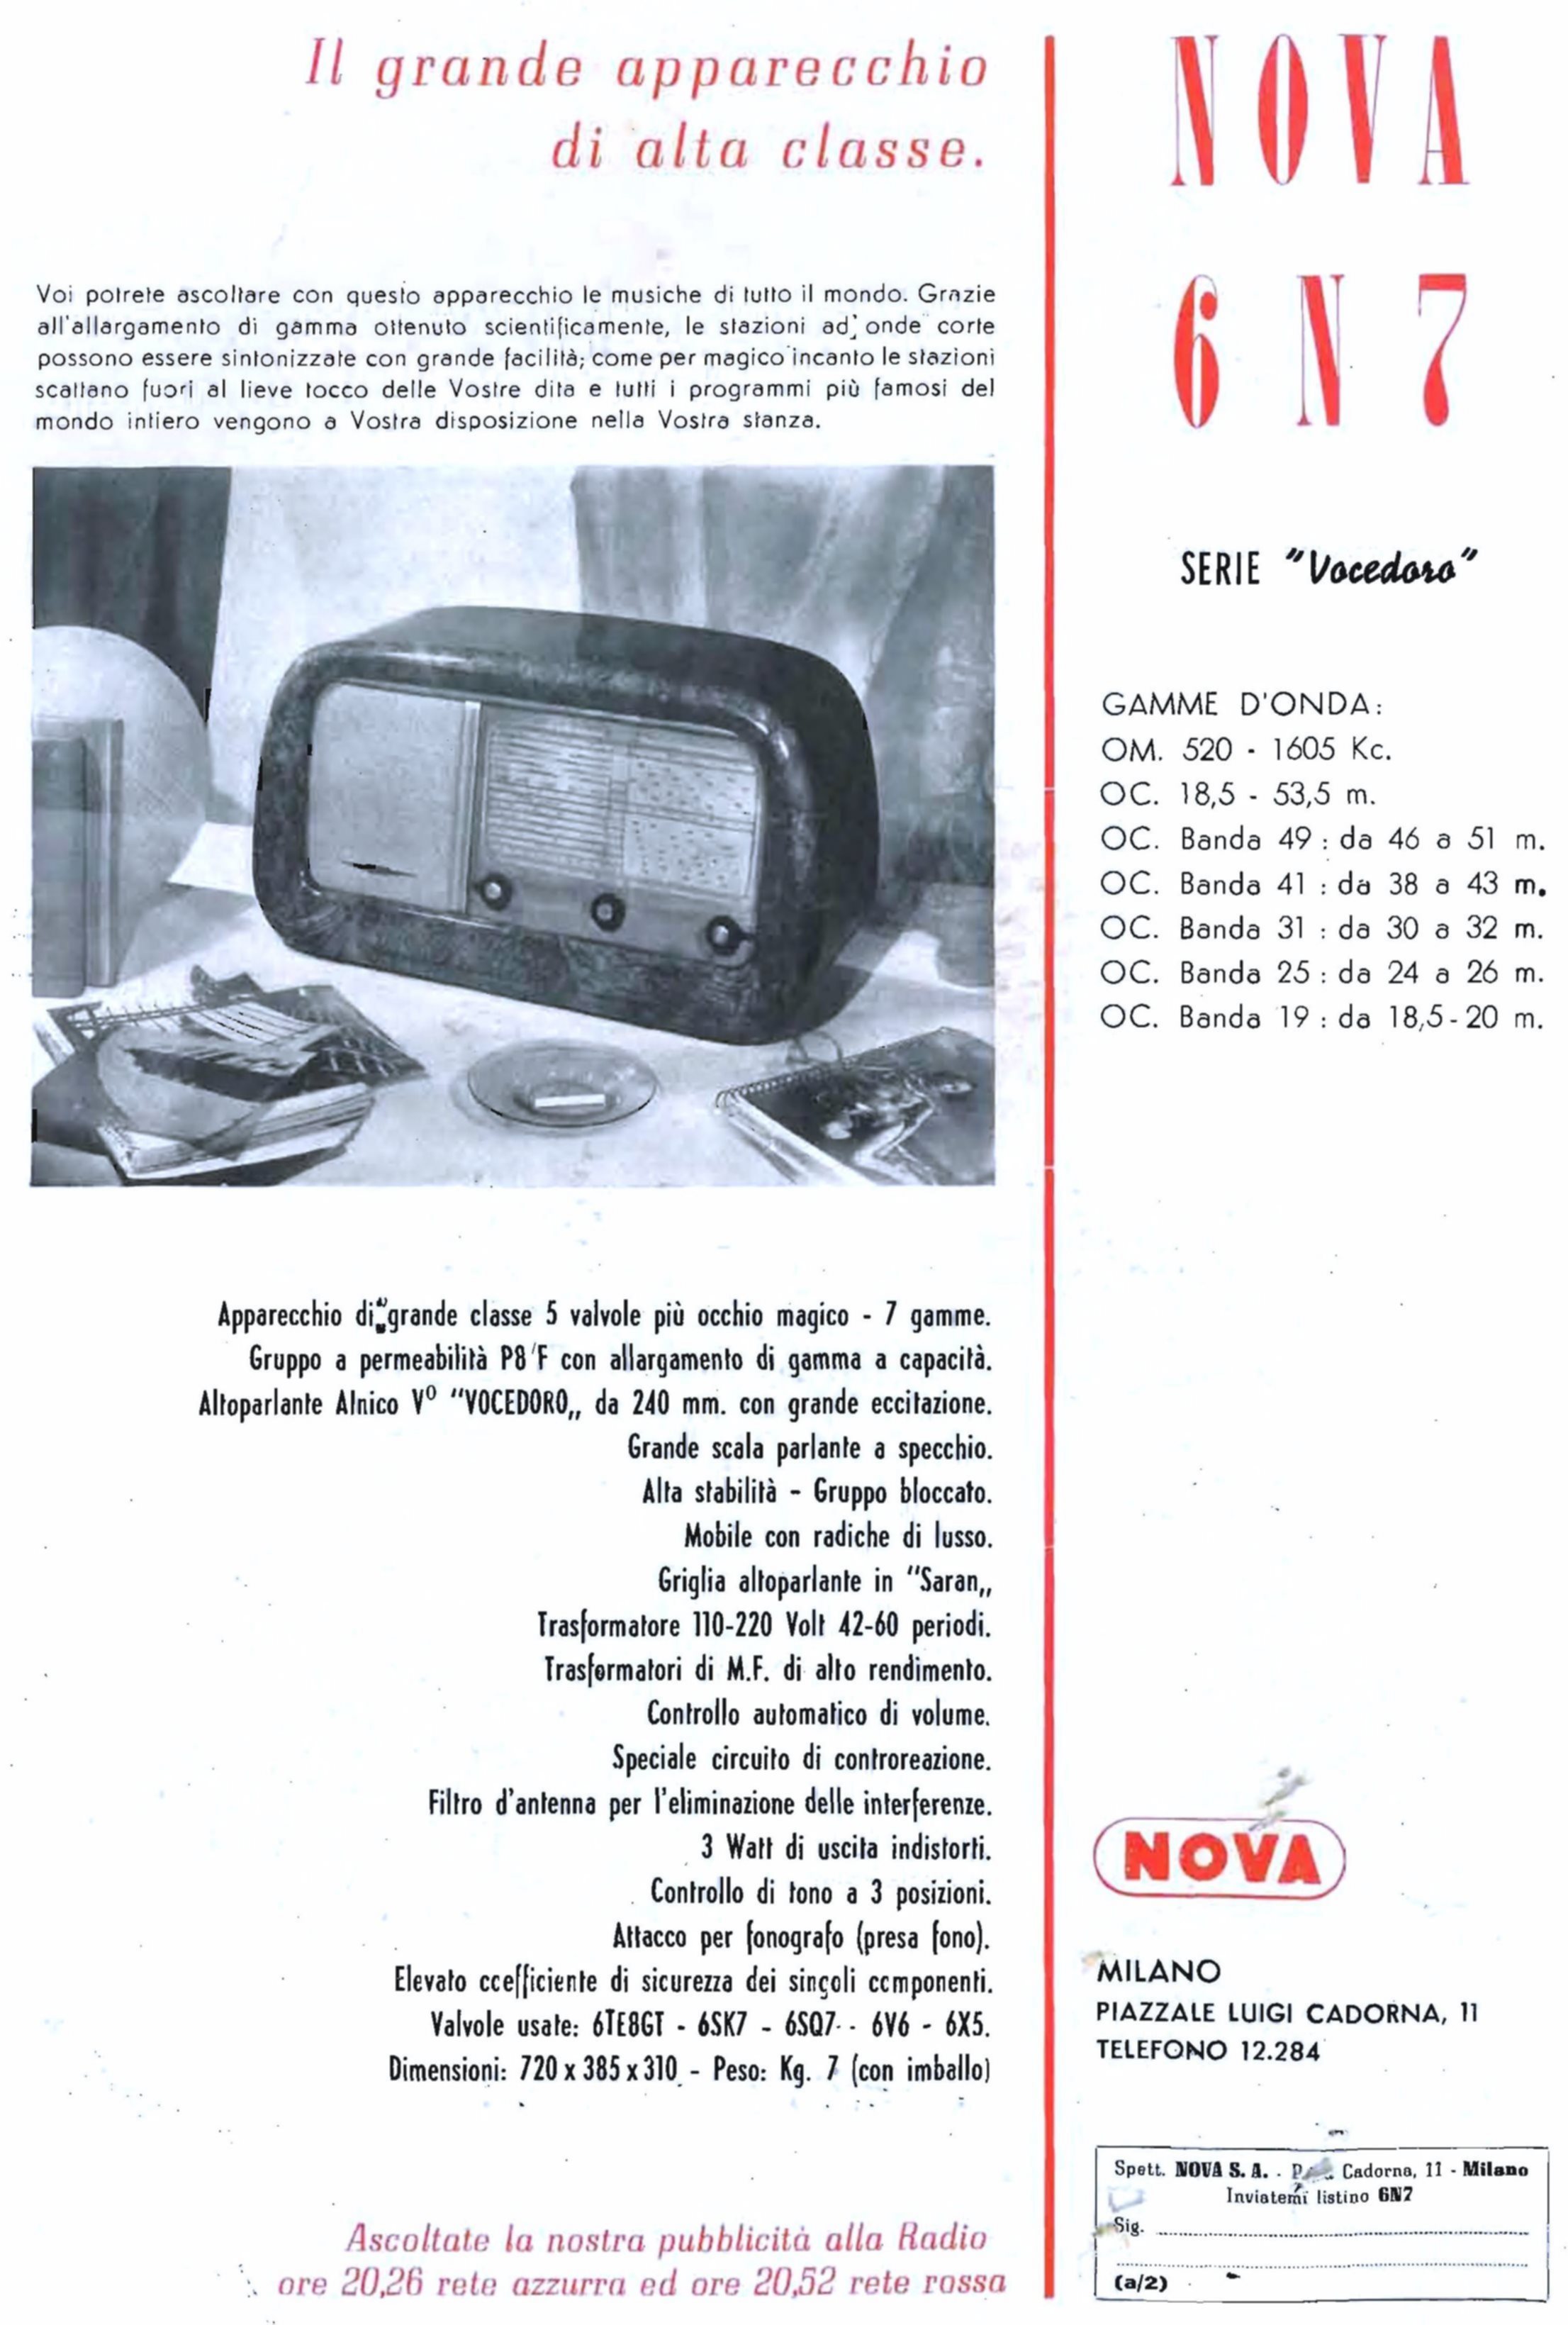 Nova 1950 475.jpg